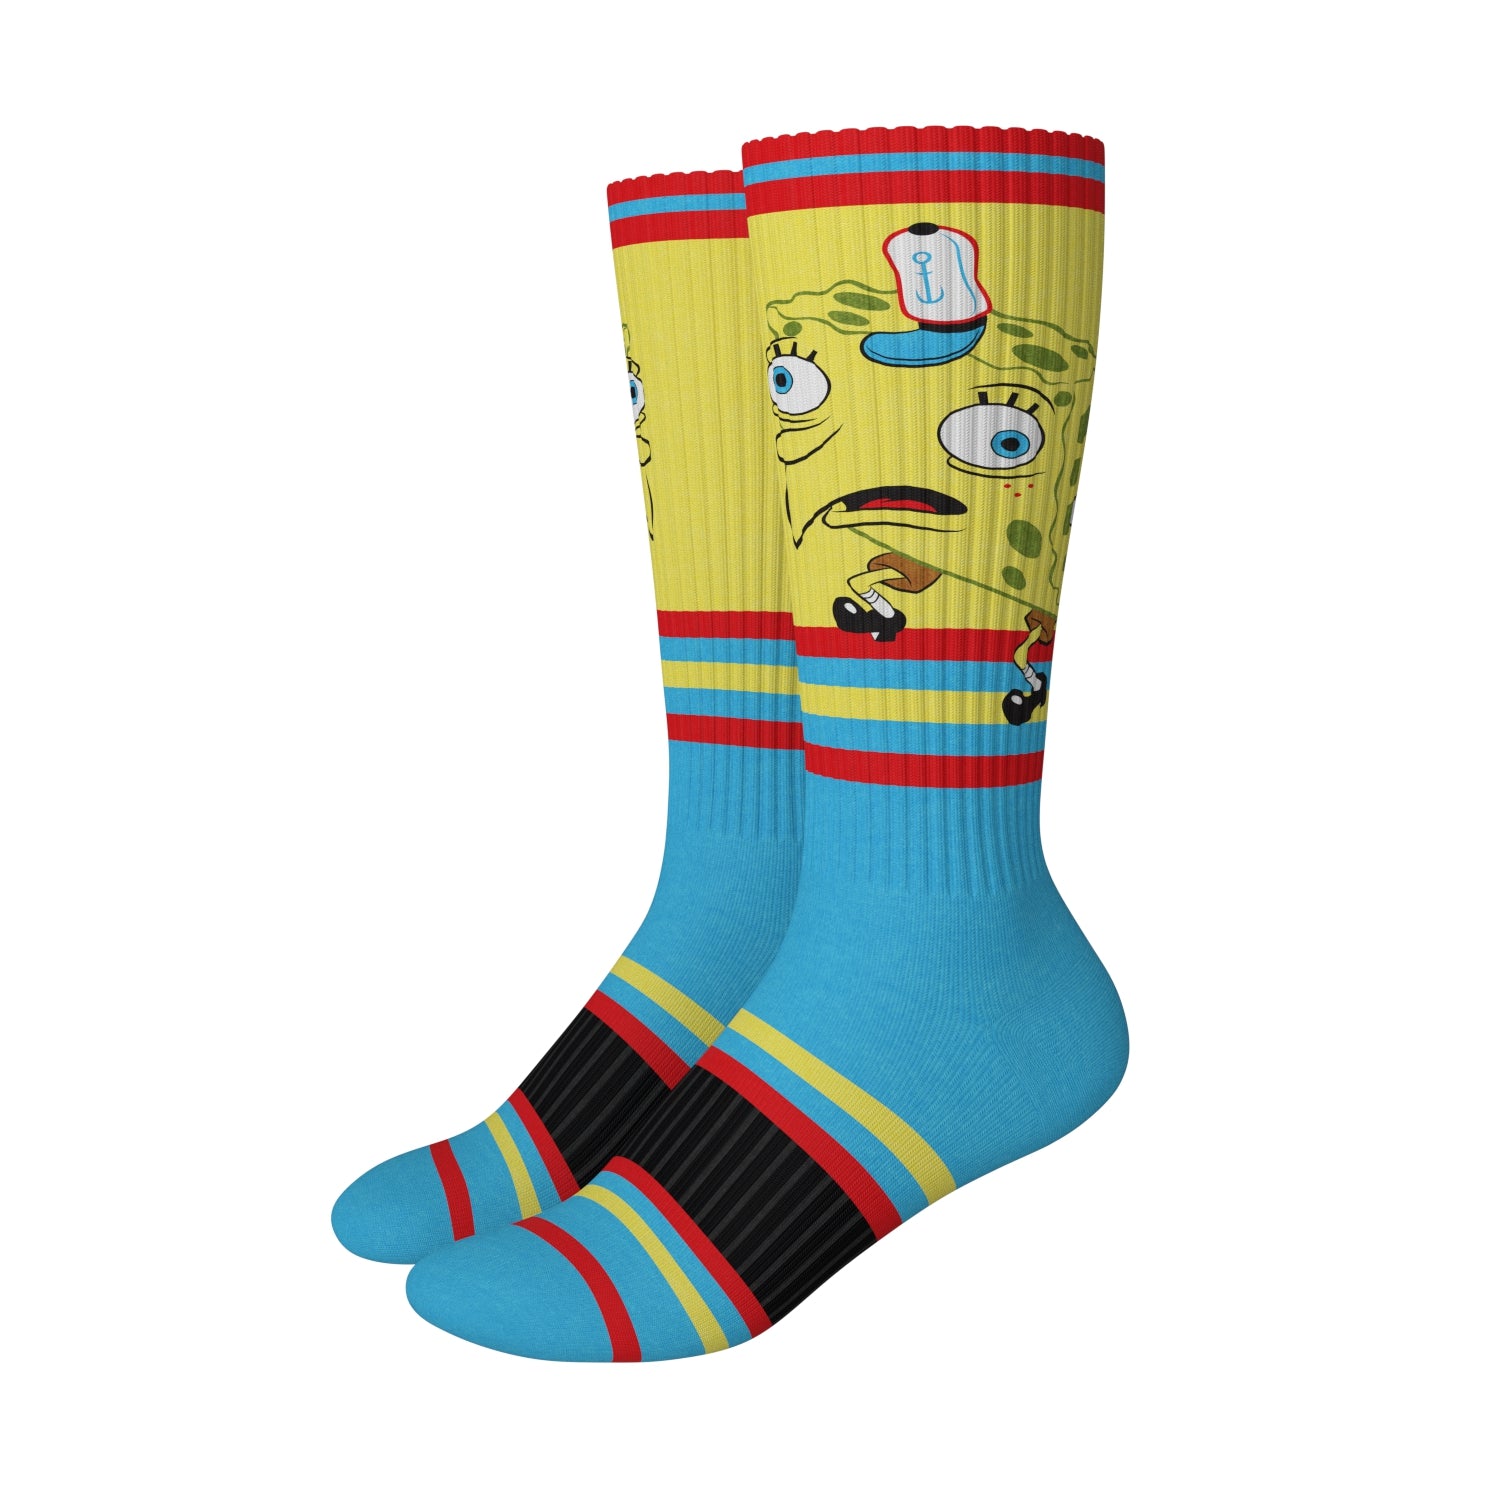 Mocking Sponge Meme Socks